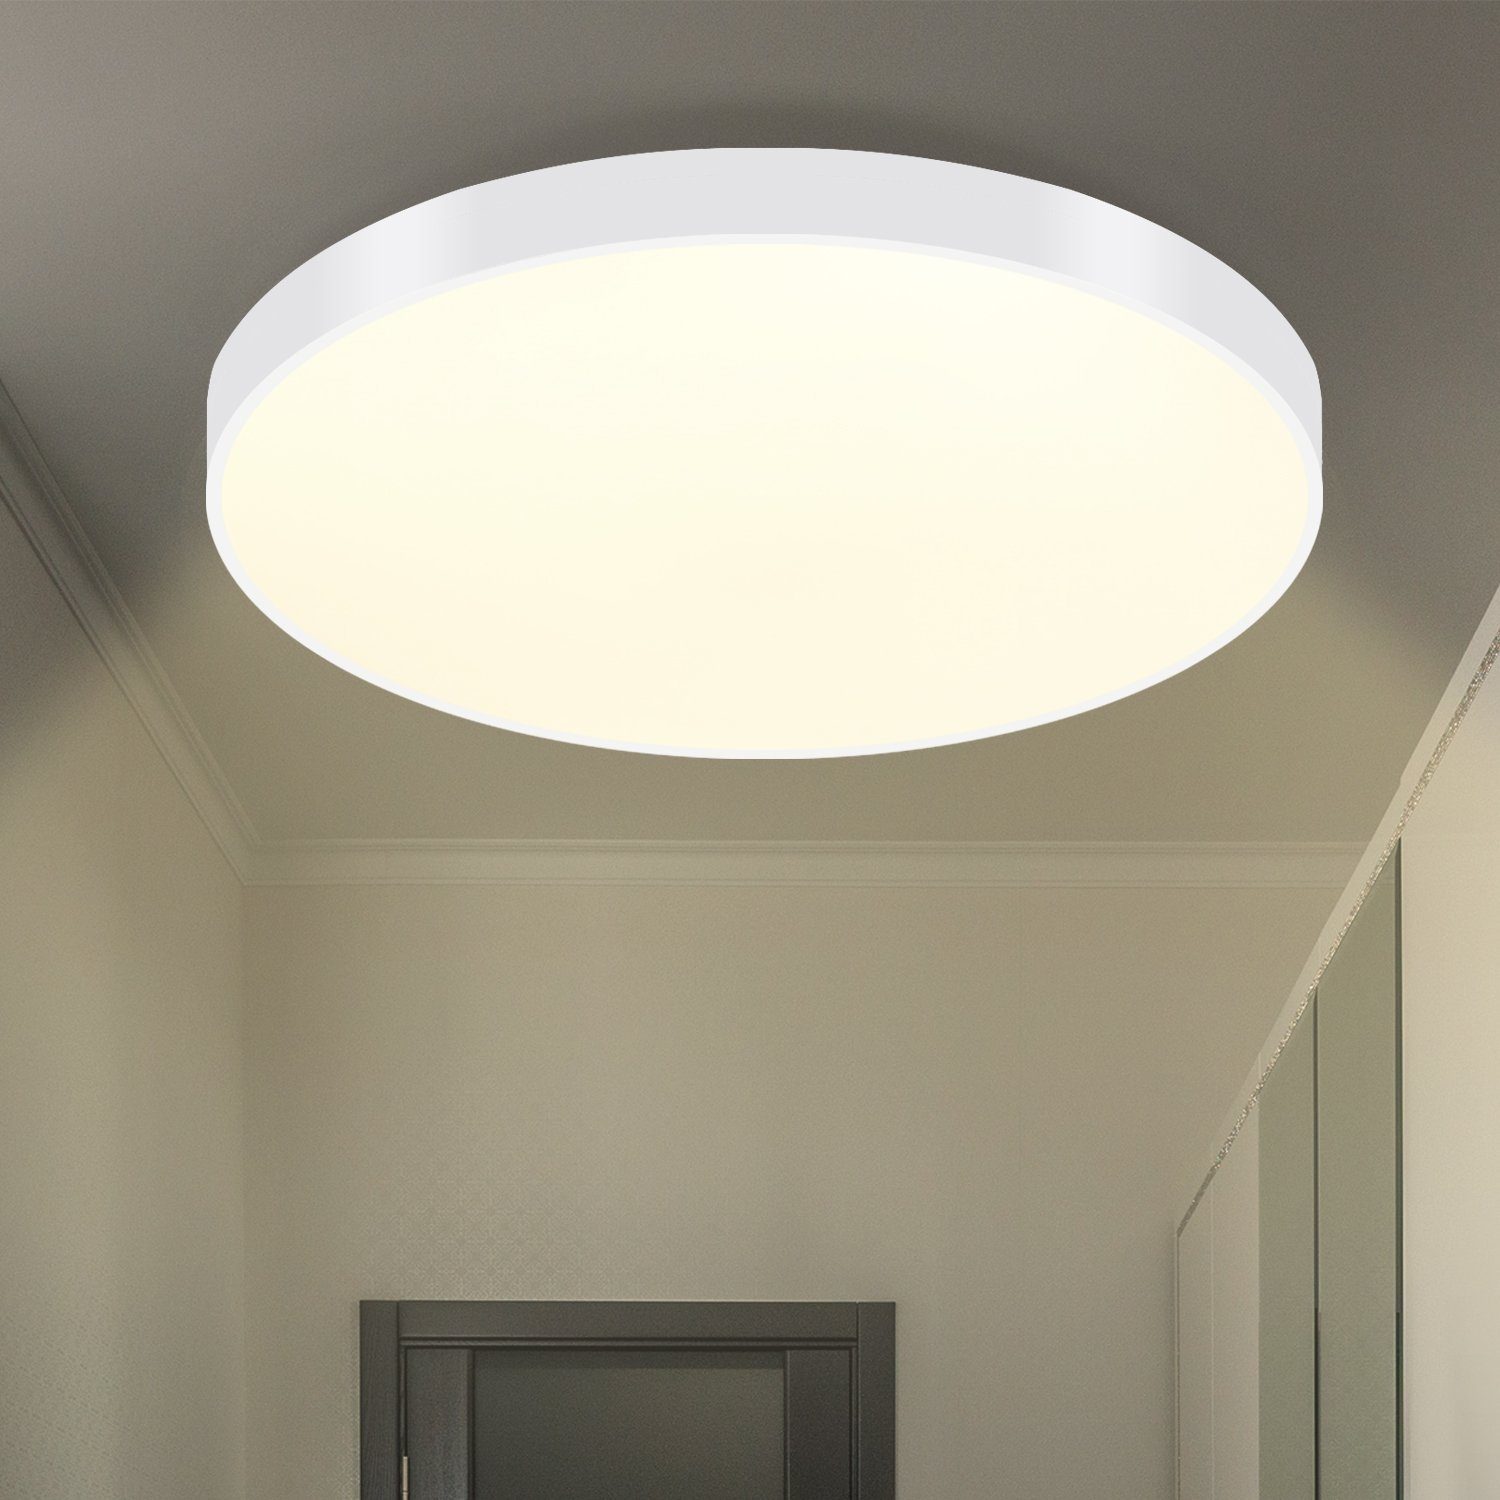 Nettlife LED Panel Schwarz Deckenlampe Flach IP44 21cm Rund Modern 12W, Wasserdicht, LED fest integriert, Warmweiß, für Badezimmer Küche Wohnzimmer Flur, 21 x 21 x 2.5 cm